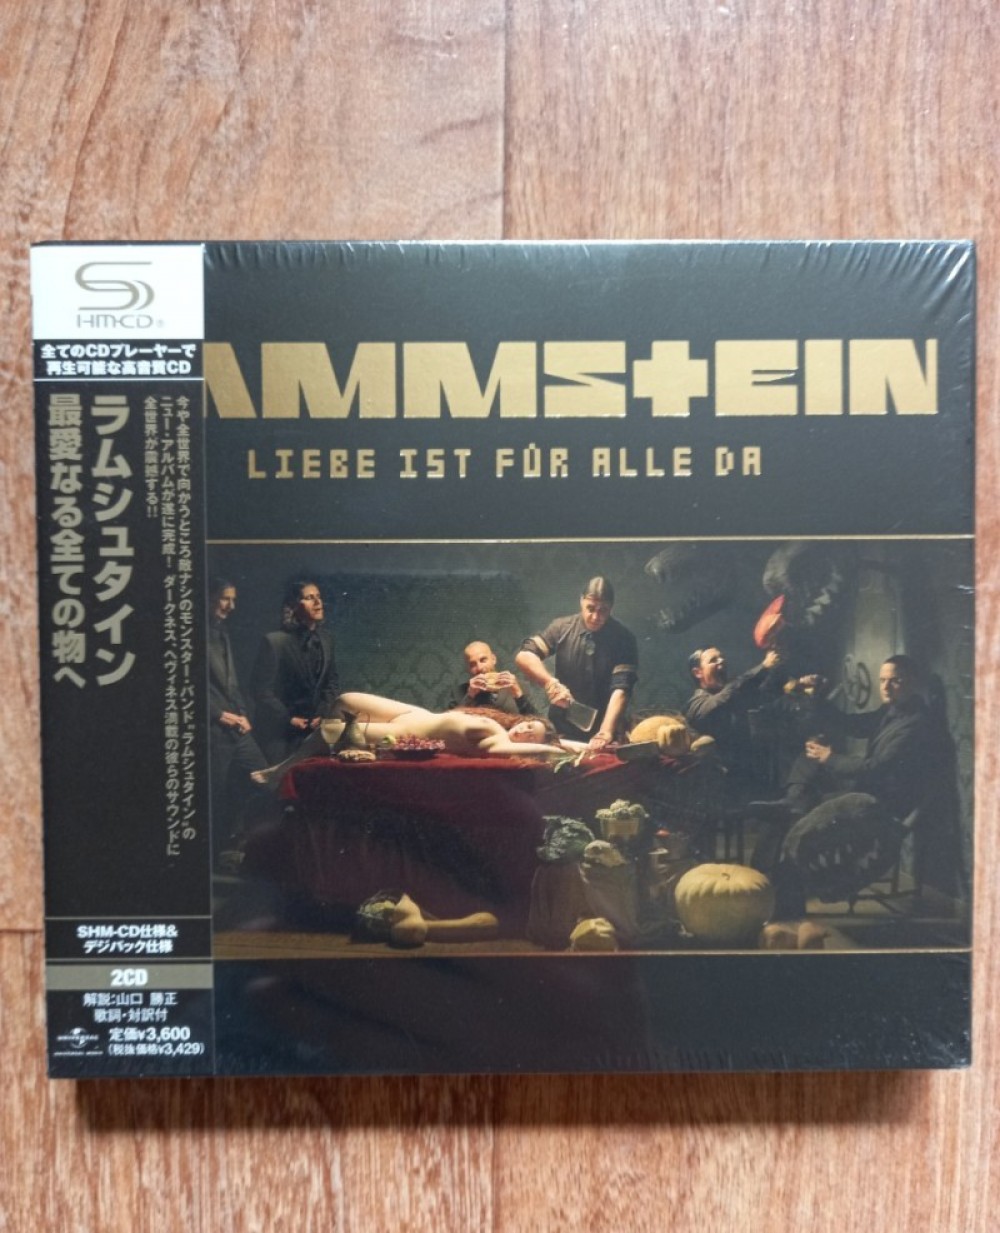 Rammstein Album ”Liebe ist für alle da”, CD